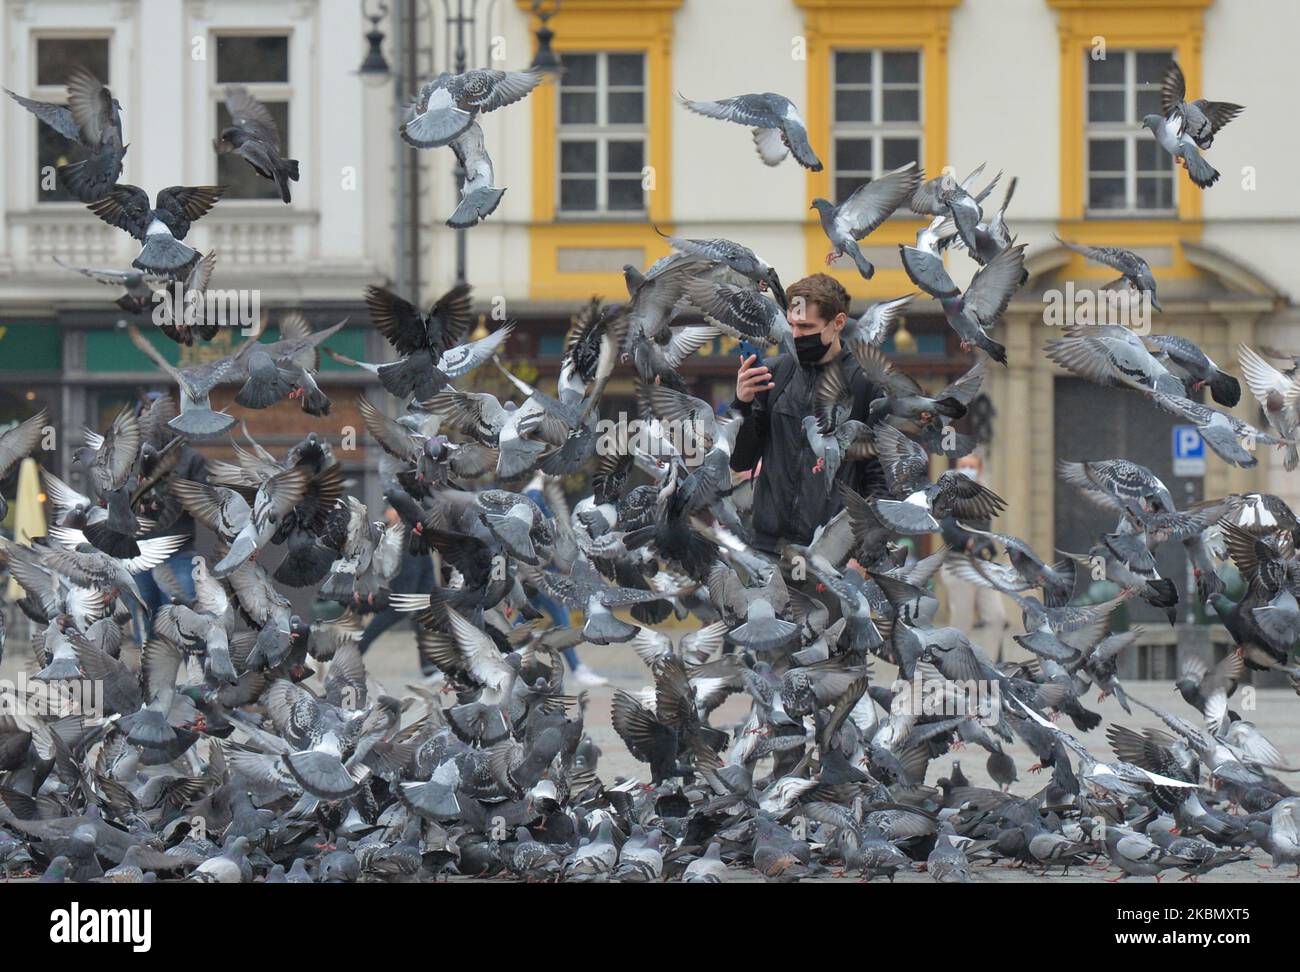 Ein Passant fotografiert eine Taubenschar auf dem Hauptplatz in Krakau. Aufgrund der Coronavirus-Krise haben Hunderte von Tauben Probleme, genug Nahrung zu finden, und sie sind dem Sterben ausgesetzt. Daher entsendet die Organisation den Inspektor täglich, um die hungrigen Vögel am Samstag, den 25. April 2020, in Krakau, Polen, zu füttern. (Foto von Artur Widak/NurPhoto) Stockfoto